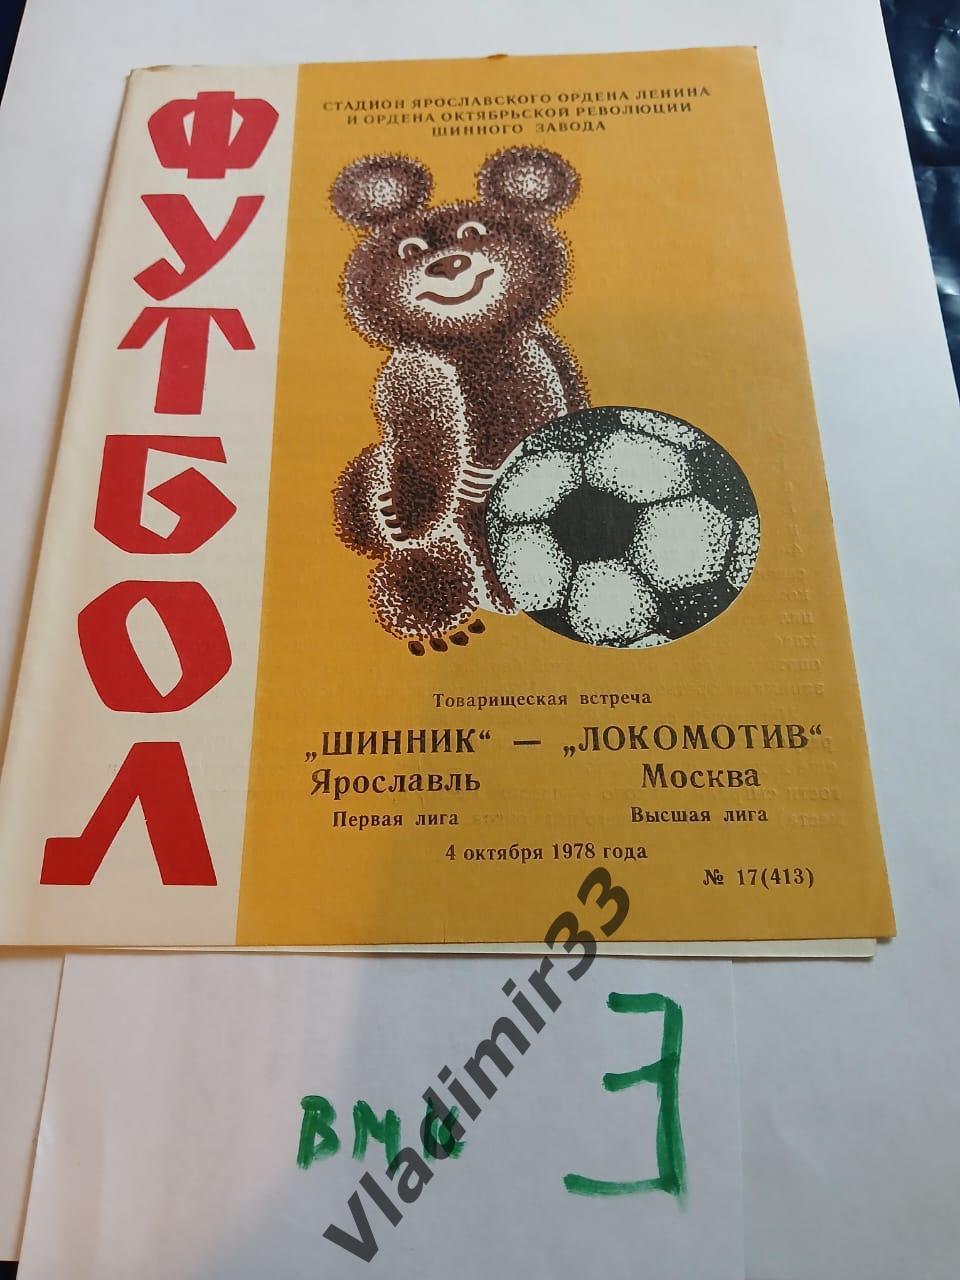 Шинник Ярославль - Локомотив Москва 1978